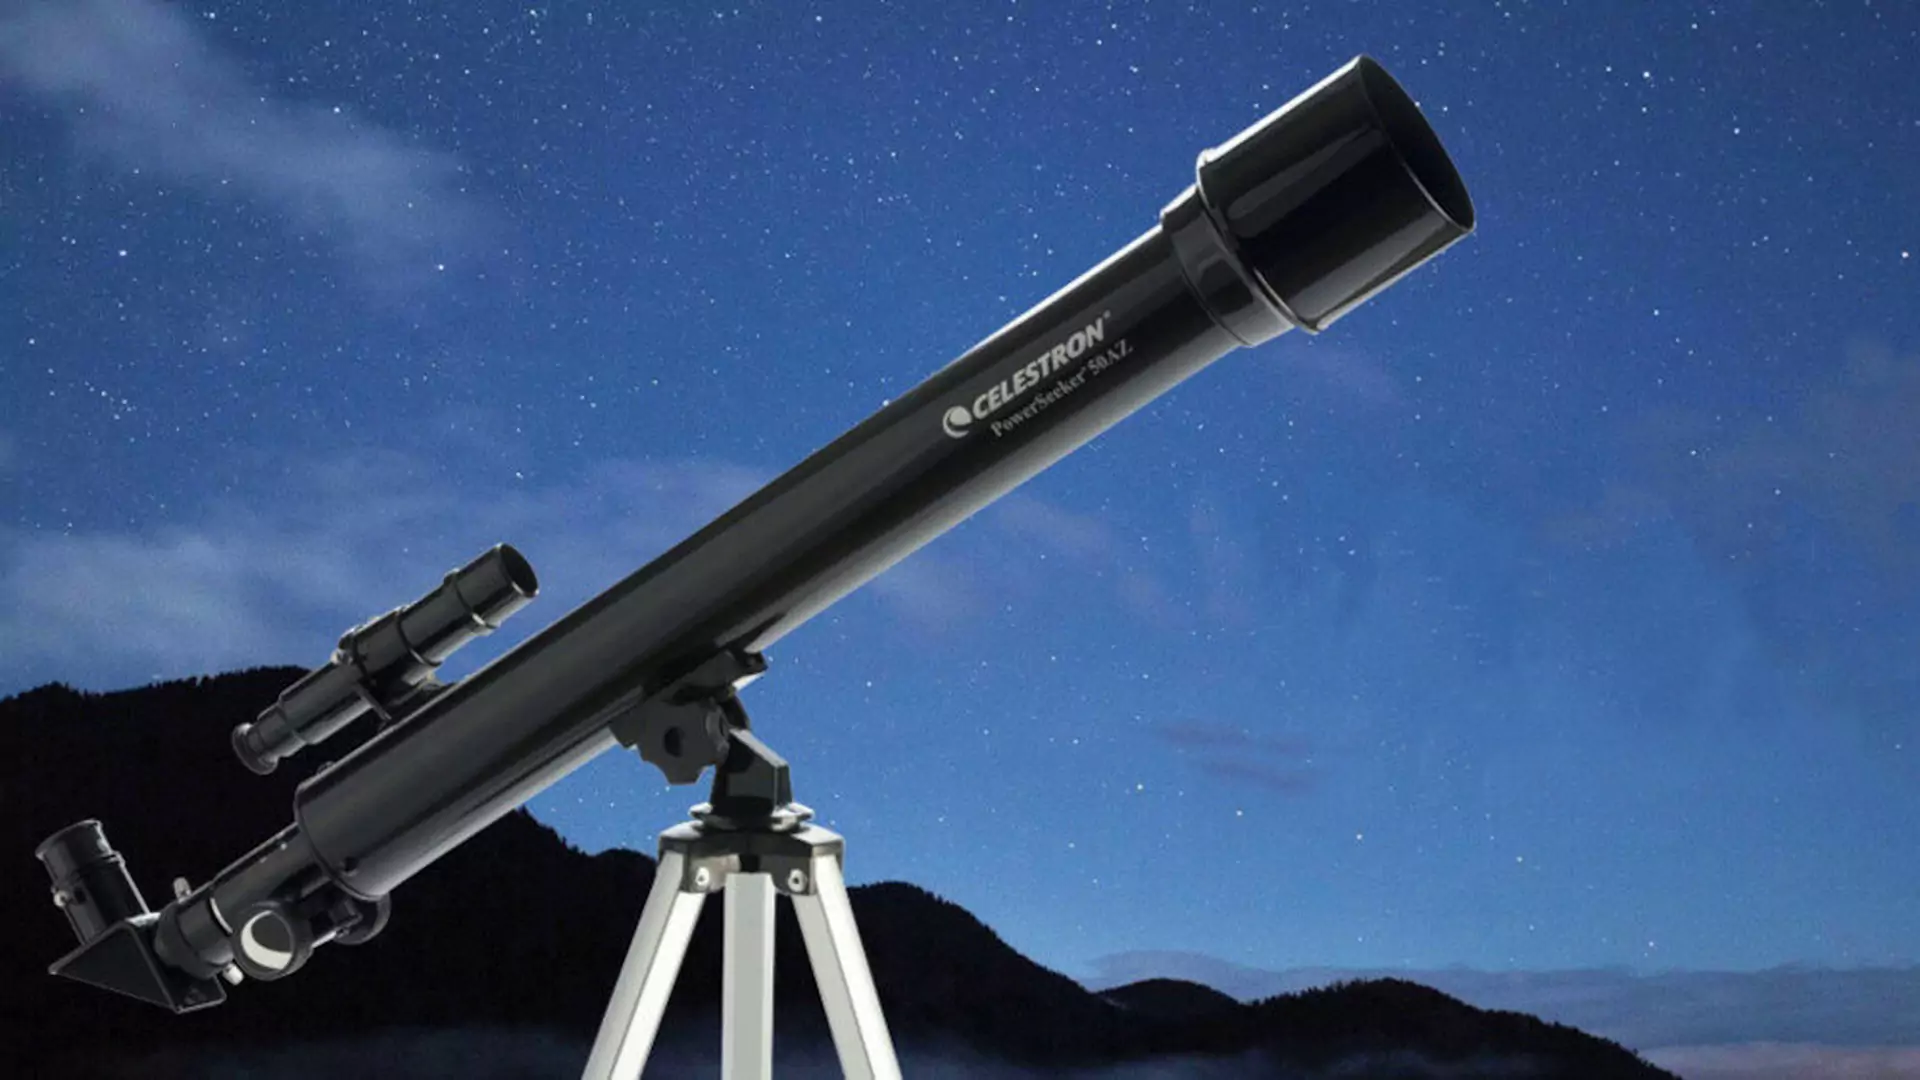 3 teleskopy idealne pod choinkę dla dziecka [które wciągną w obserwację nieba także rodziców]